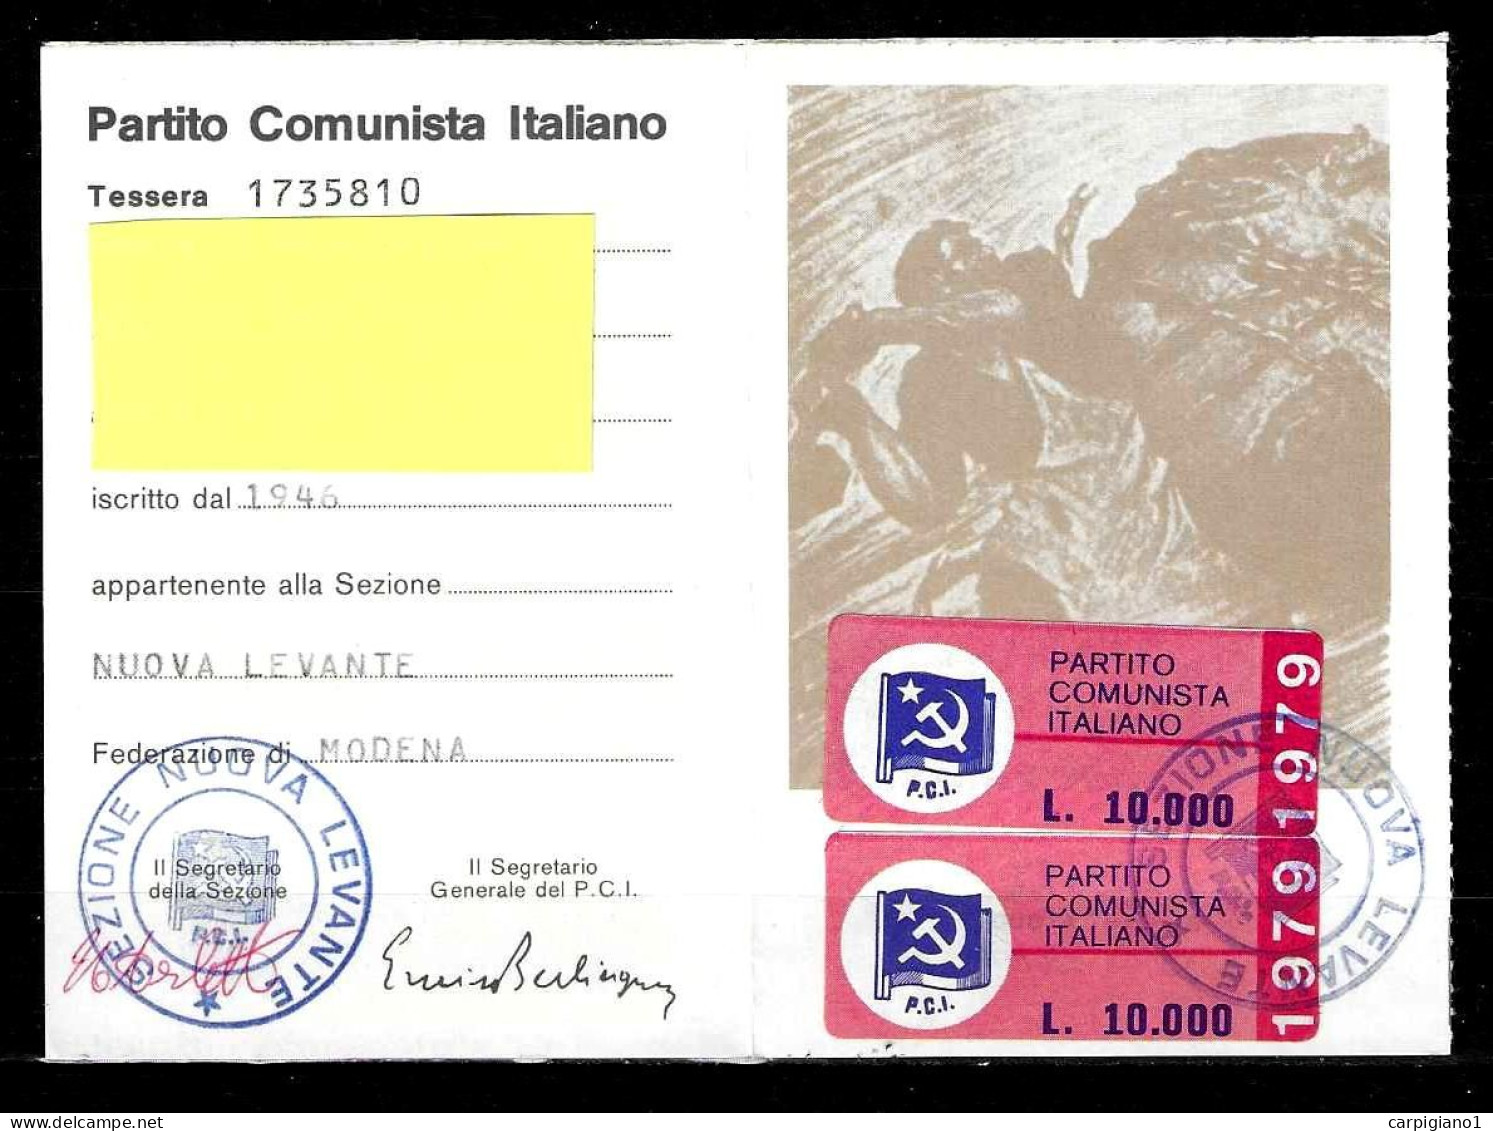 1979 Tessera PCI Partito Comunista Italiano Con Timbri E 2 Bollini -all'interno Riproduzione Della Prima Tessera Del PCI - Historical Documents